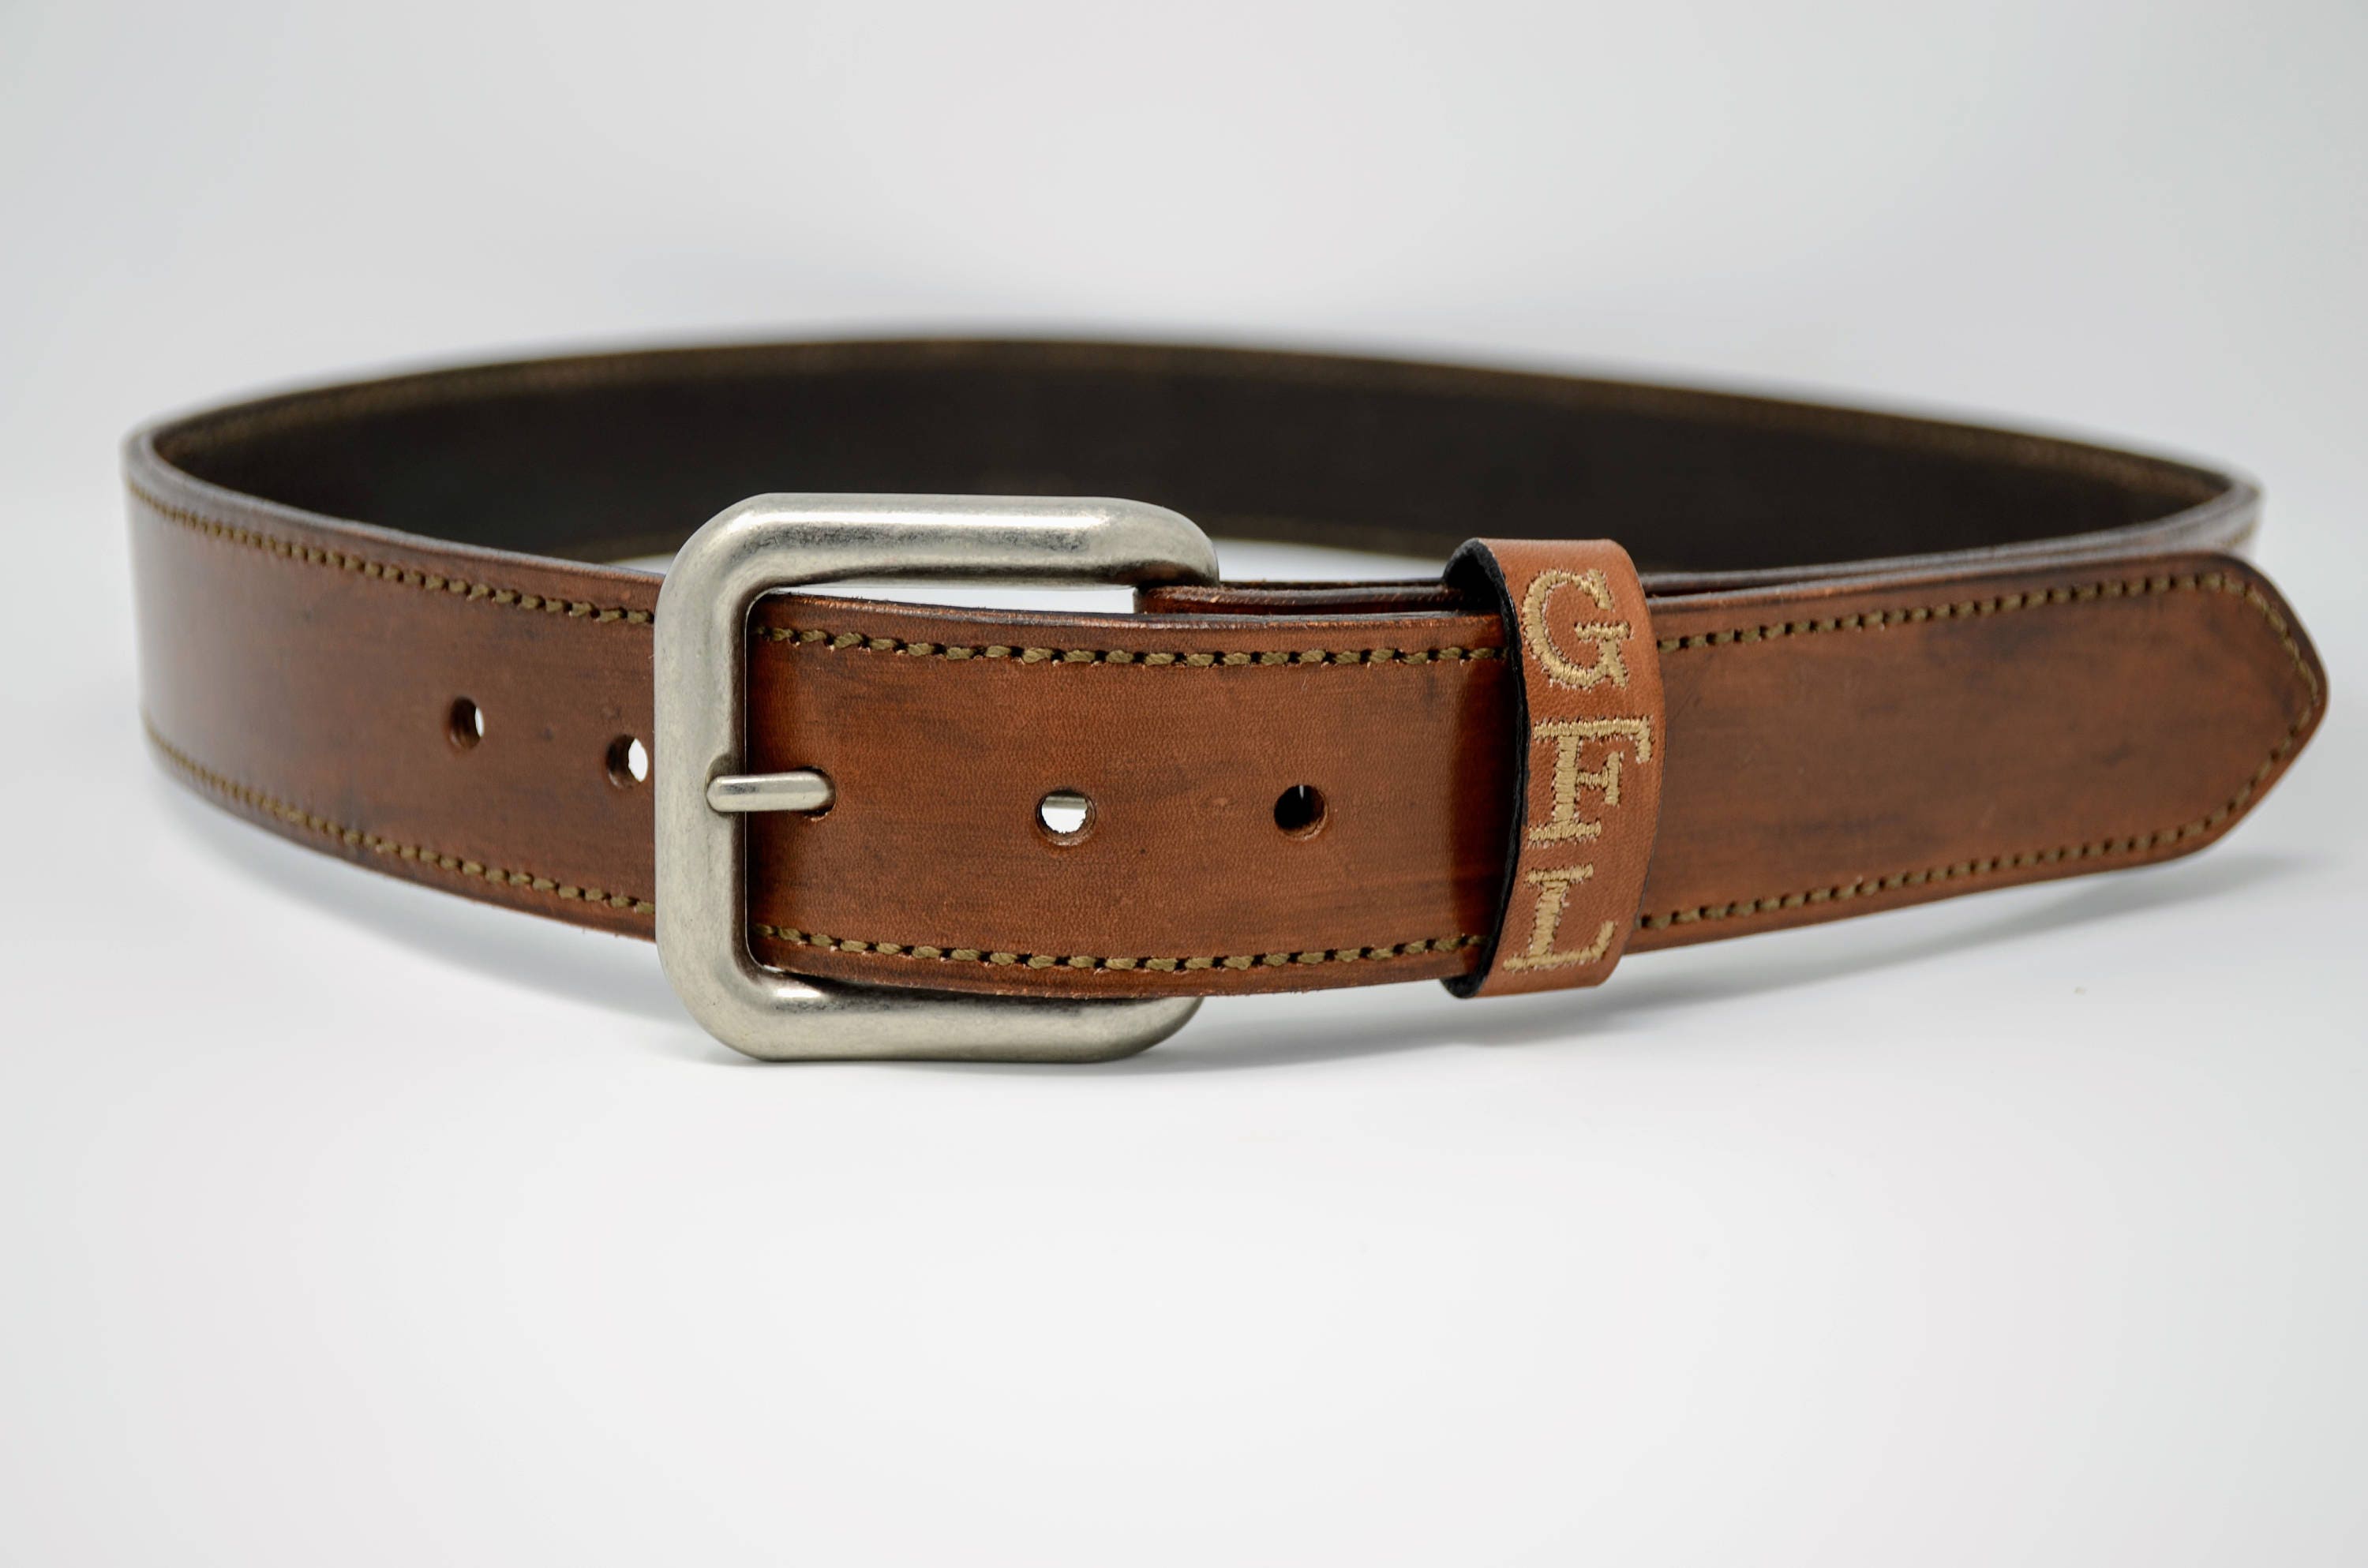 Mens Leather Belt Brown - Custom Leather Belt Engraved Name - Stitched Belt for Men ...